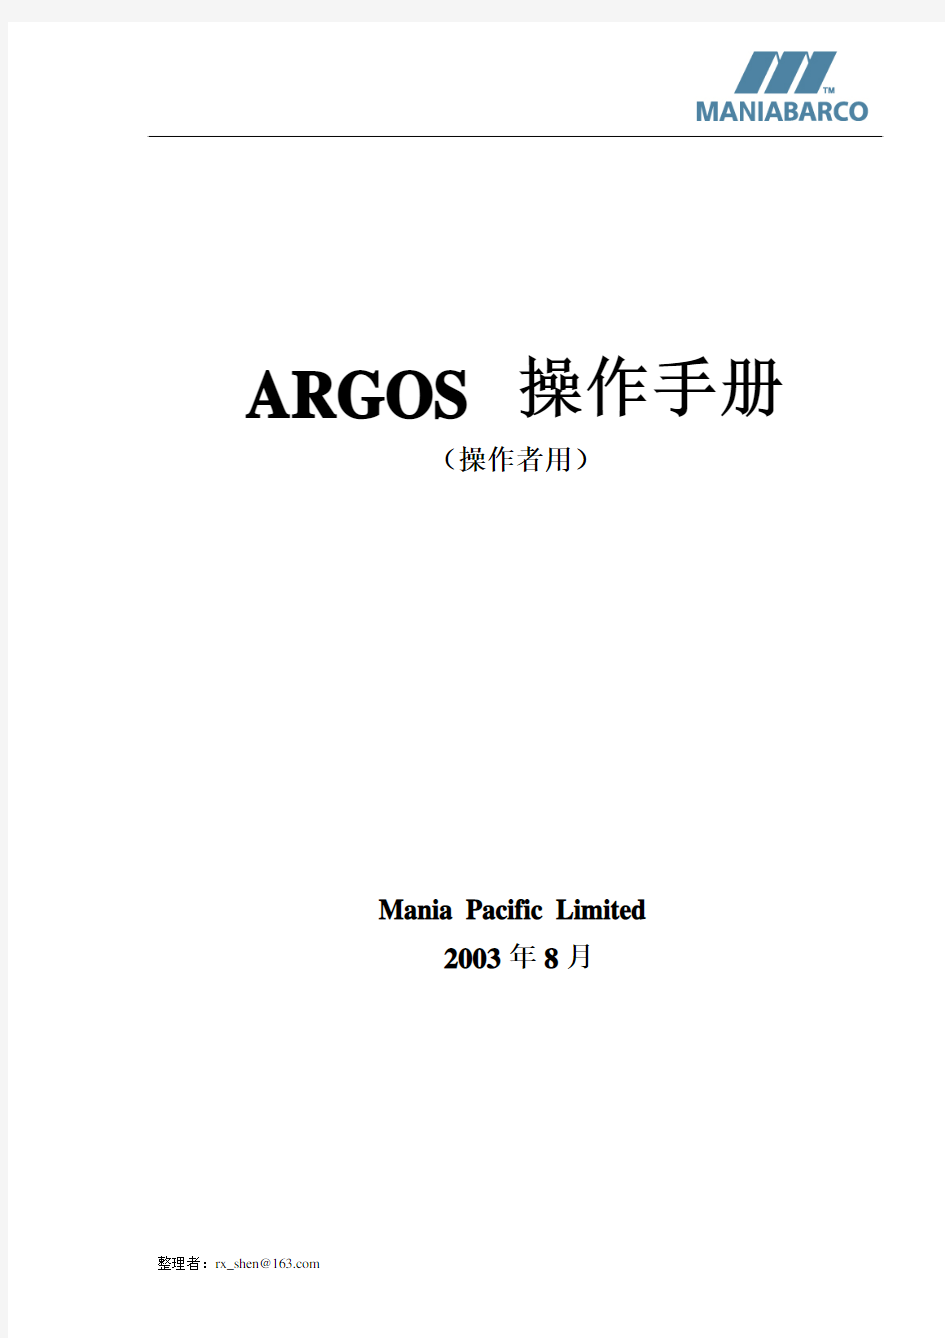 ARGOS操作手册 基本操作英文版